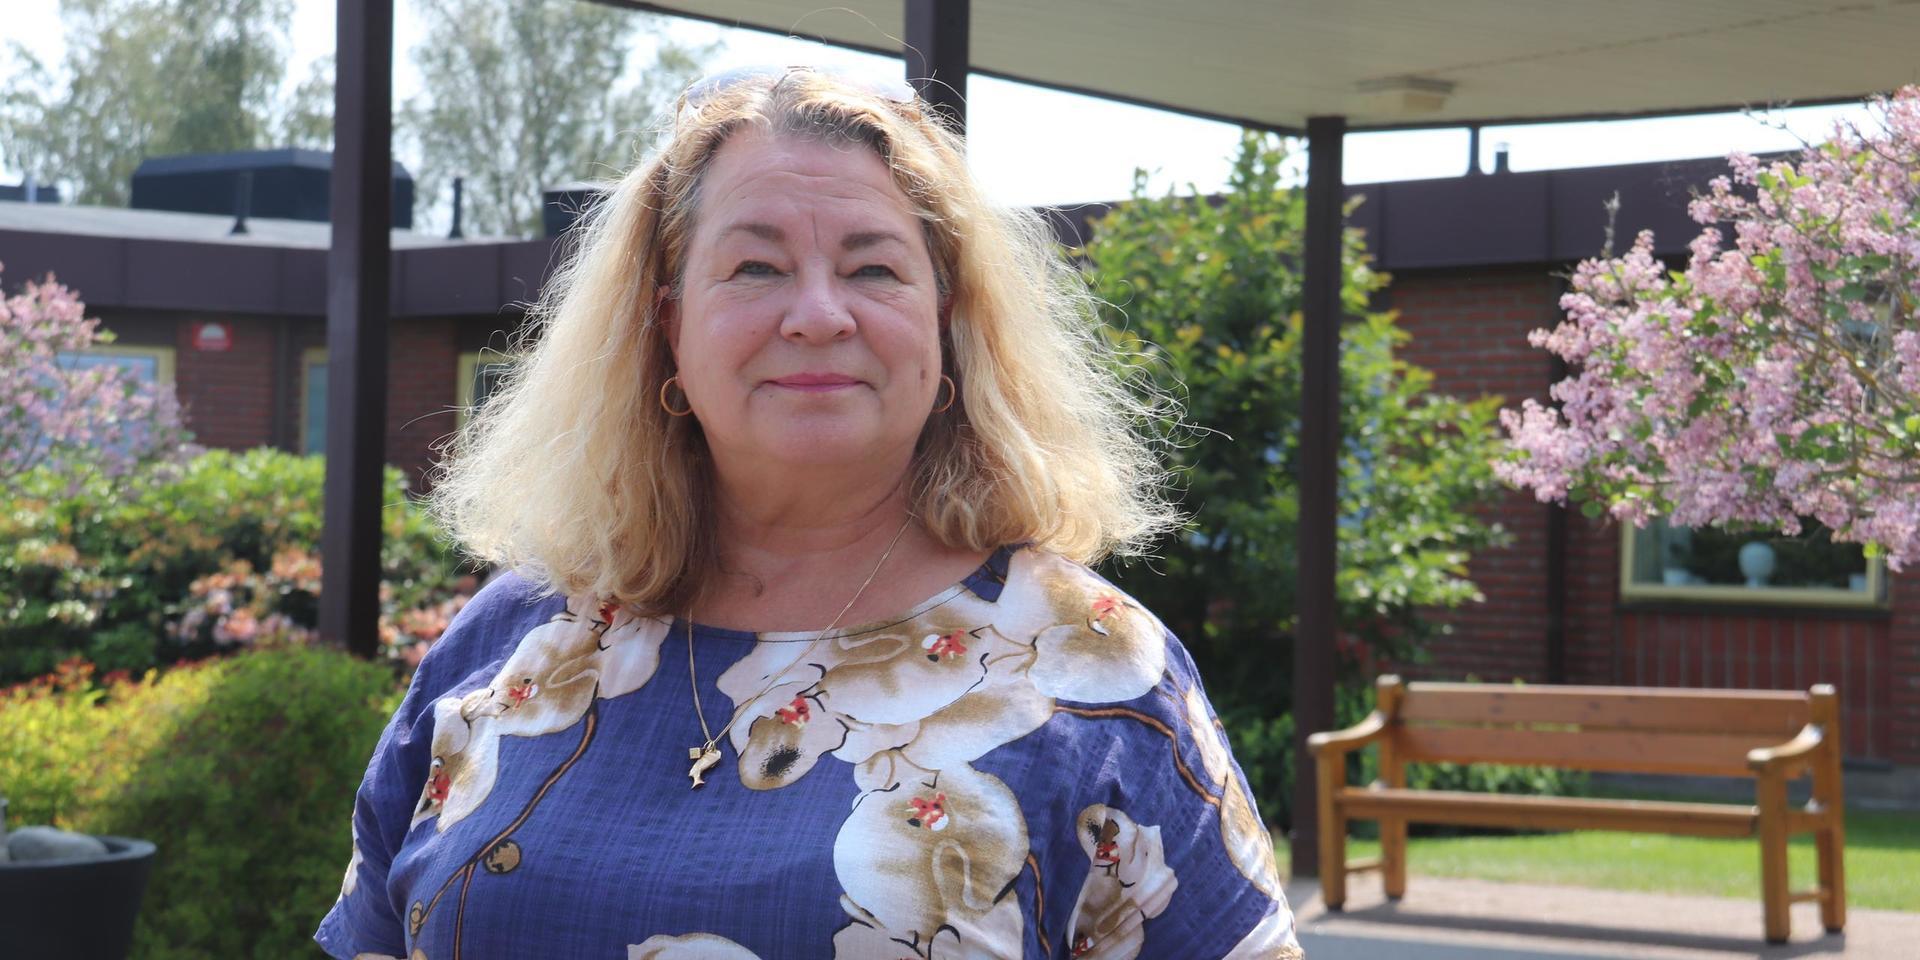 Anette Eriksson säger att hon får prioritera för att hinna med arbetet på Fässbergs äldreboende: ”Ibland får jag säga till min chef att jag faktiskt inte hinner vara med på ett möte, för att jag behöver vara ute i verksamheten”.